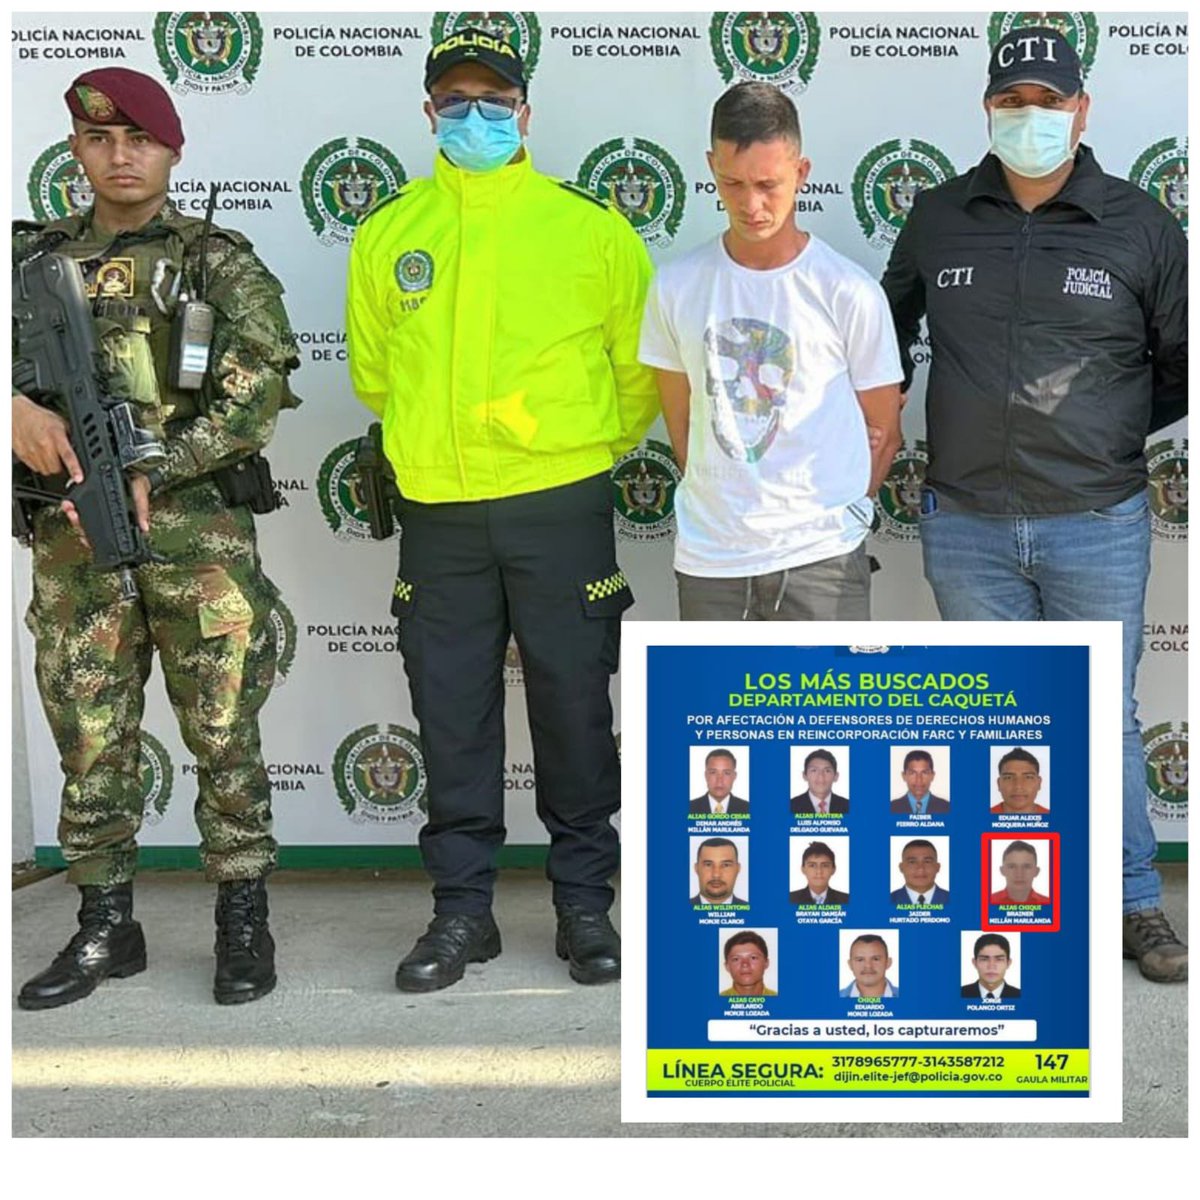 Avanzan los resultados de la #OperacionThemis: fue capturado alias ‘Chiqui’, integrante del Estado Mayor Central de disidencias Farc, por homicidio de líder comunal en el 2021.
 
Alias ‘Chiqui’, publicado en el cartel de los más buscados por asesinar a líderes sociales en